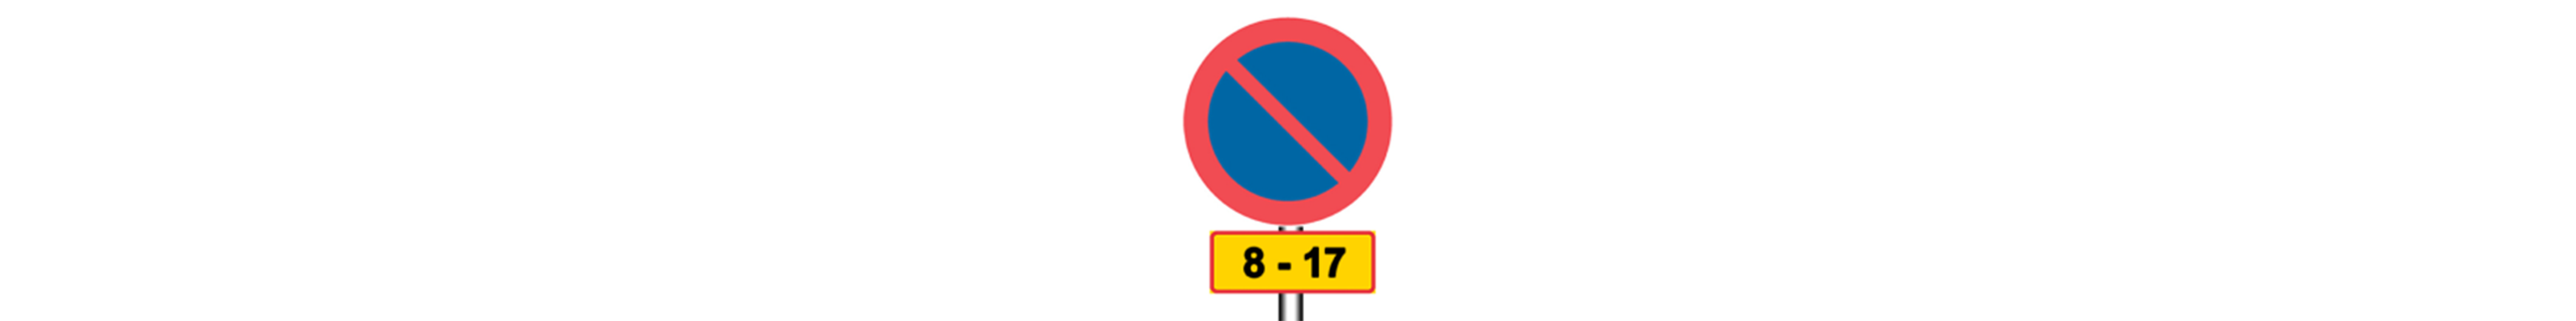 Skylt som visar parkeringsförbud med en tilläggstavla med tidsangivelsen 8–17.